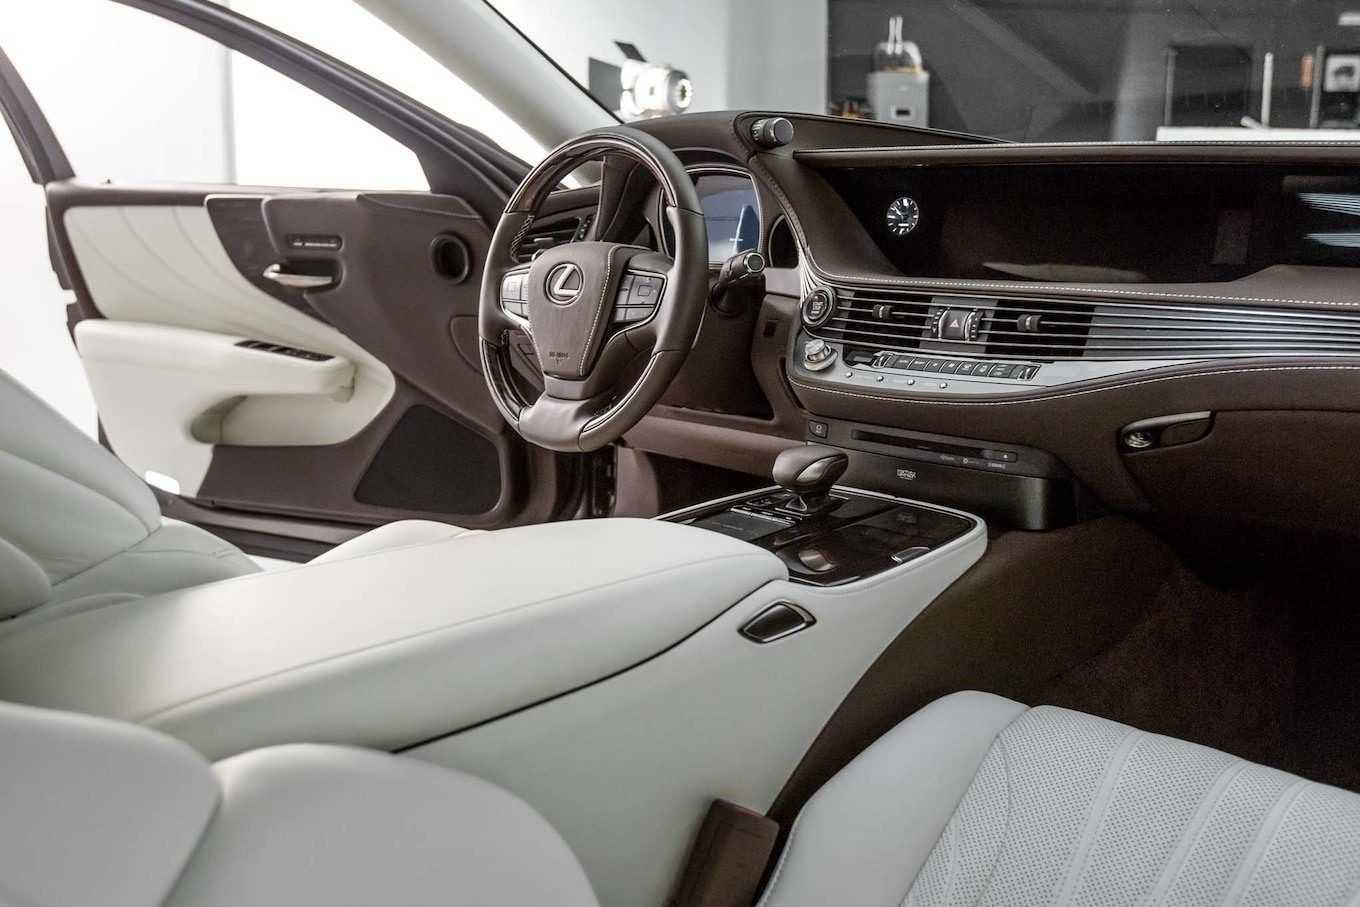 Lexus представляет новое поколение флагманского седана ls